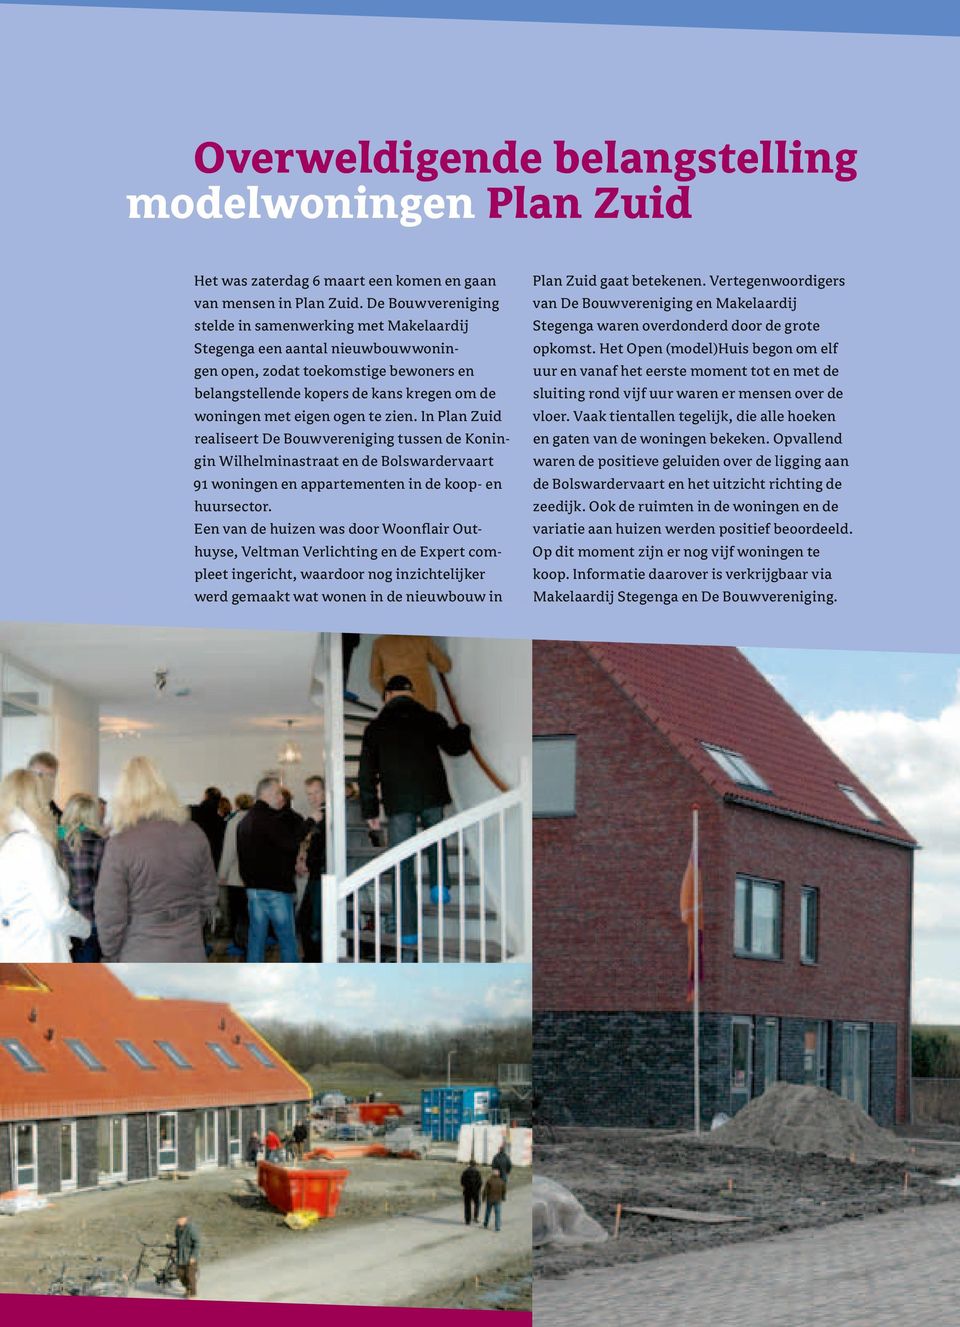 te zien. In Plan Zuid realiseert De Bouwvereniging tussen de Koningin Wilhelminastraat en de Bolswardervaart 91 woningen en appartementen in de koop- en huursector.